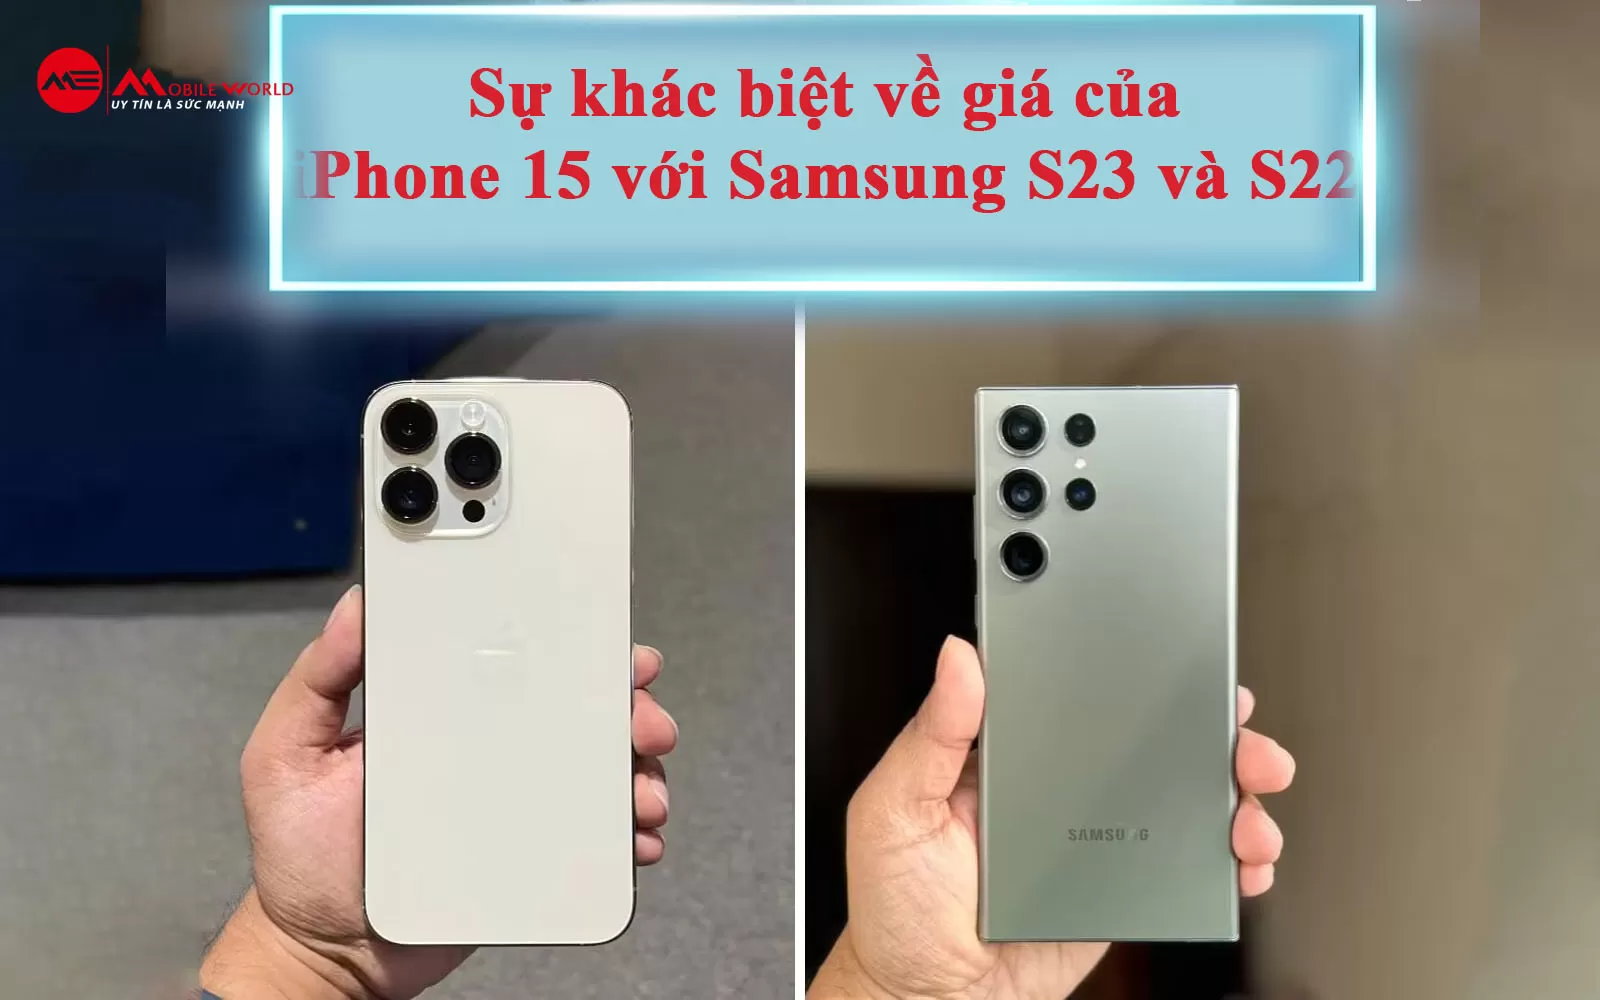 Sự khác biệt về giá của iPhone 15 với Samsung S23 và S22